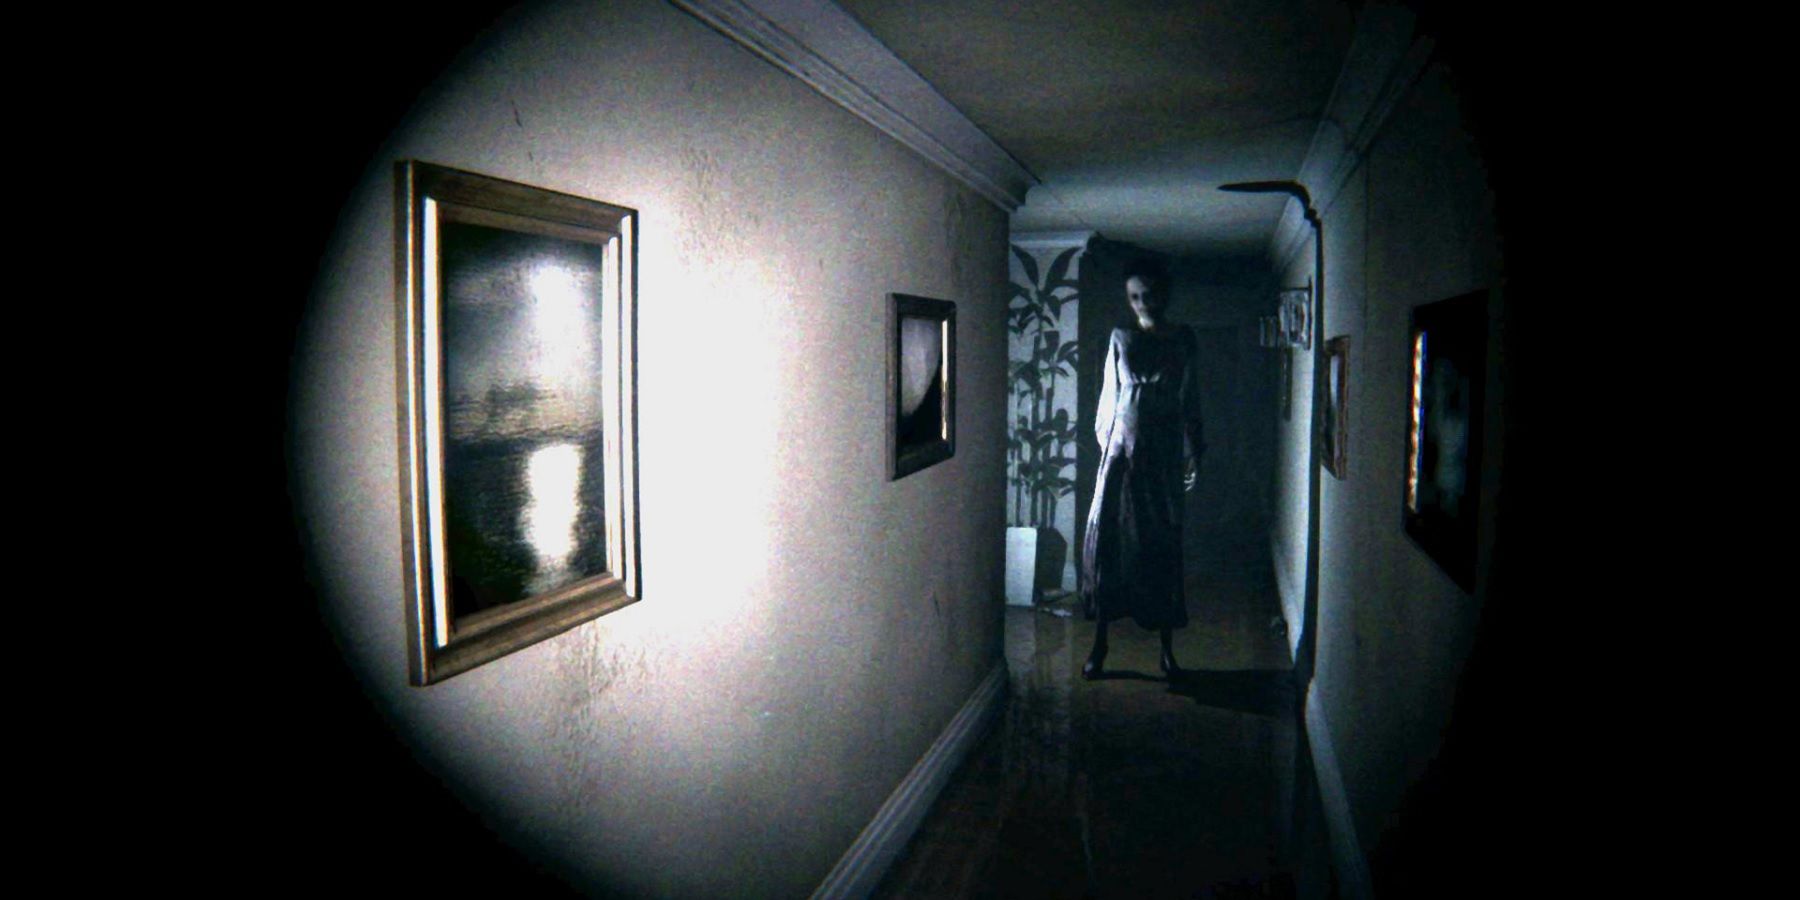 ჭორები: Kojima ანვითარებს Silent Hill თამაშს Sony-ს დაფინანსებით